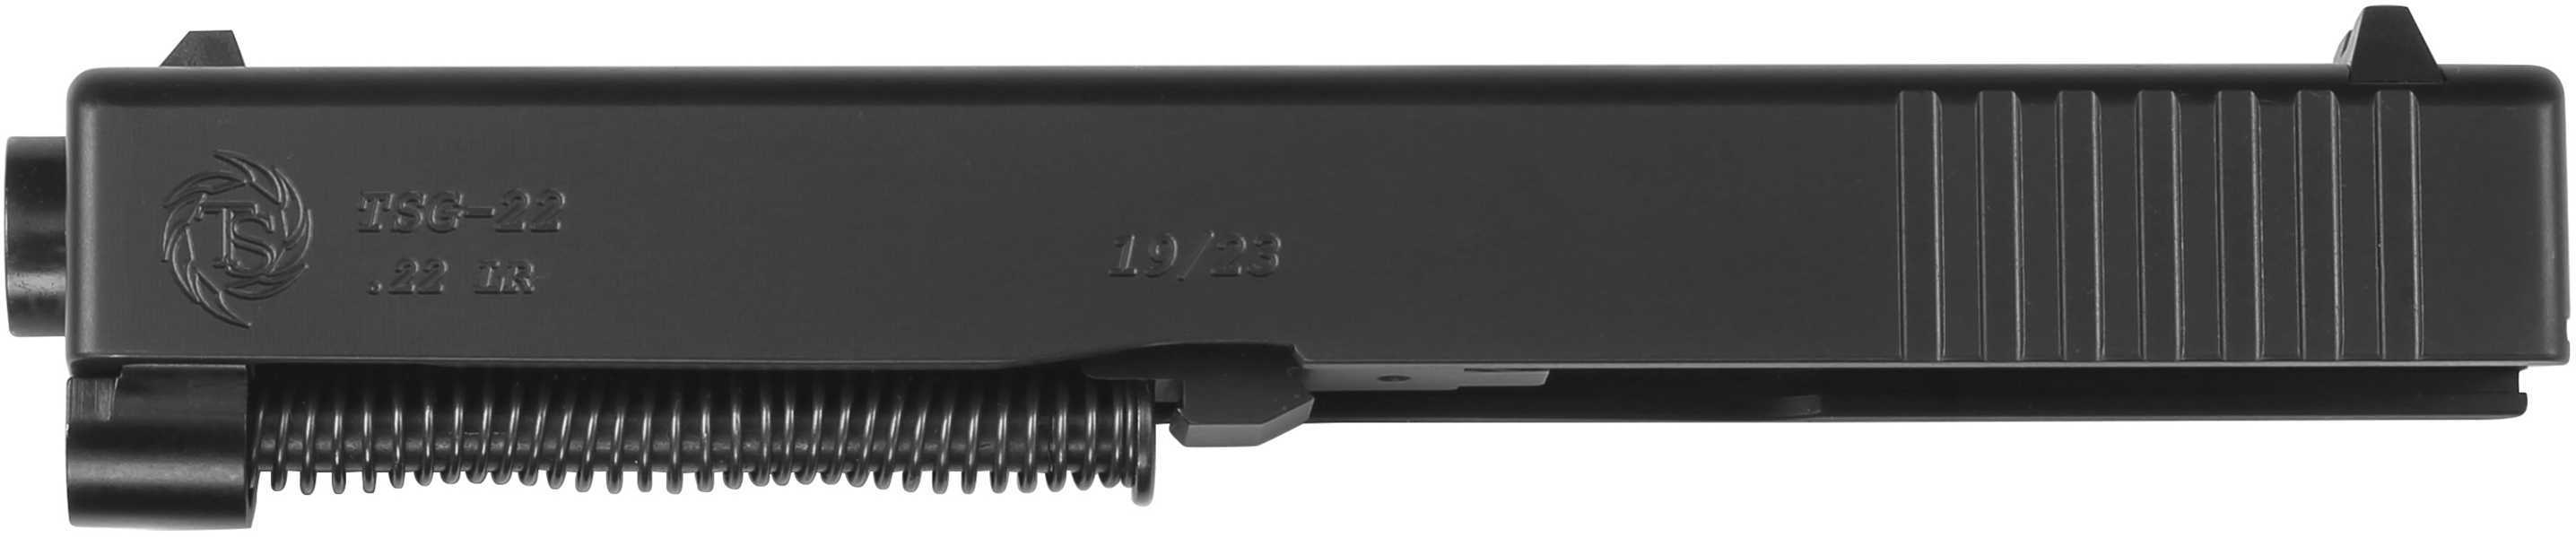 TACSOL TSG-22 for Glock 19 22LR Std Conversion Kit